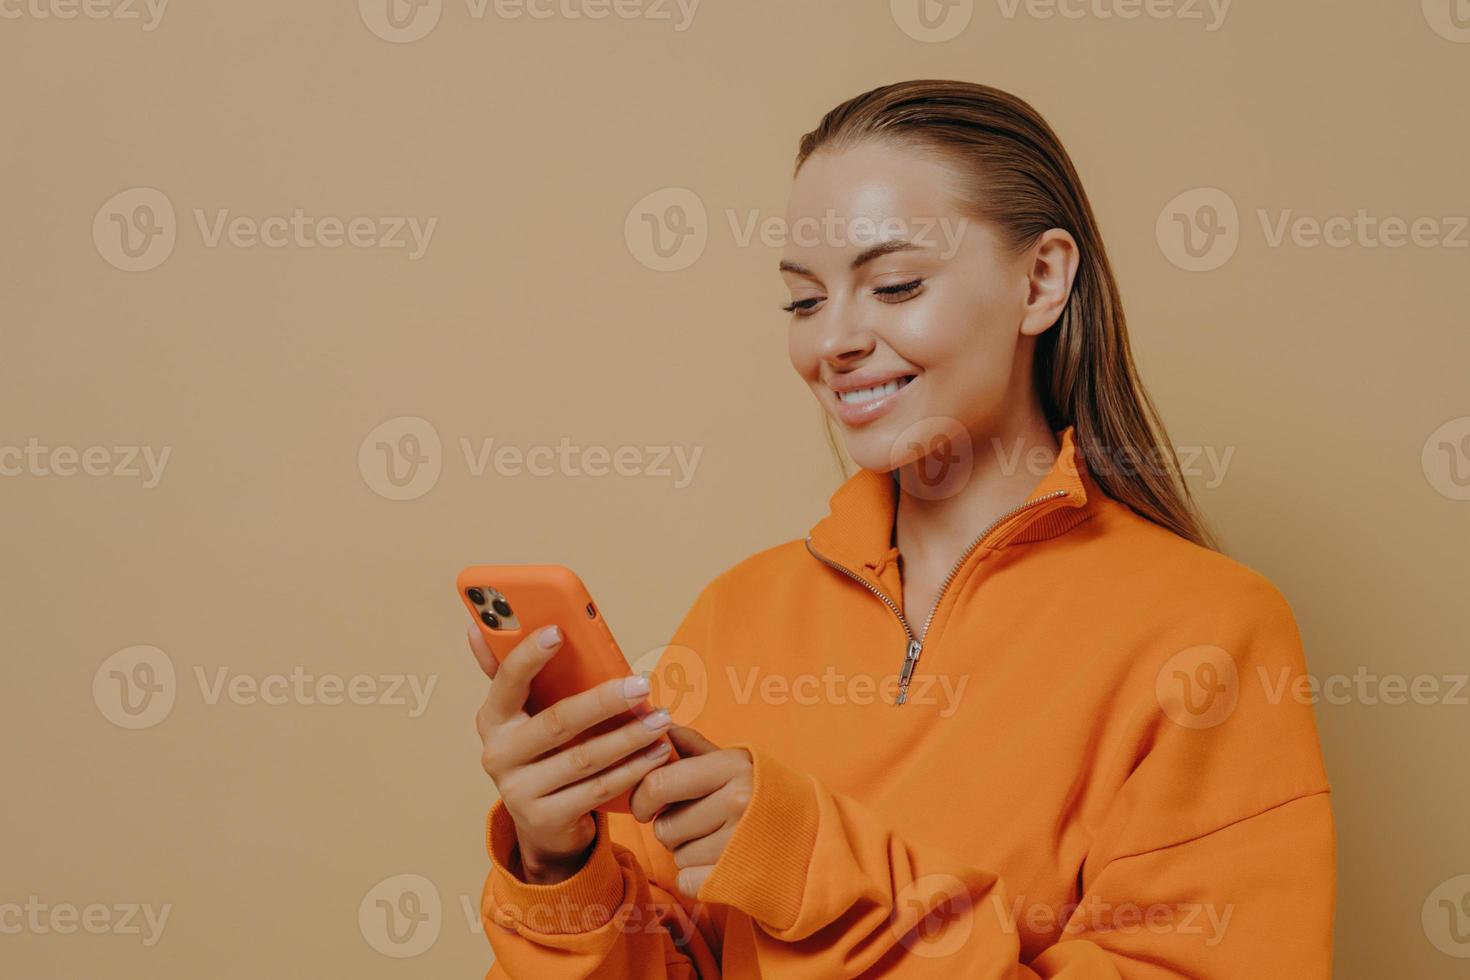 gelukkige charmante jonge vrouw die smartphone in handen houdt en glimlacht, chat in sociale netwerken foto